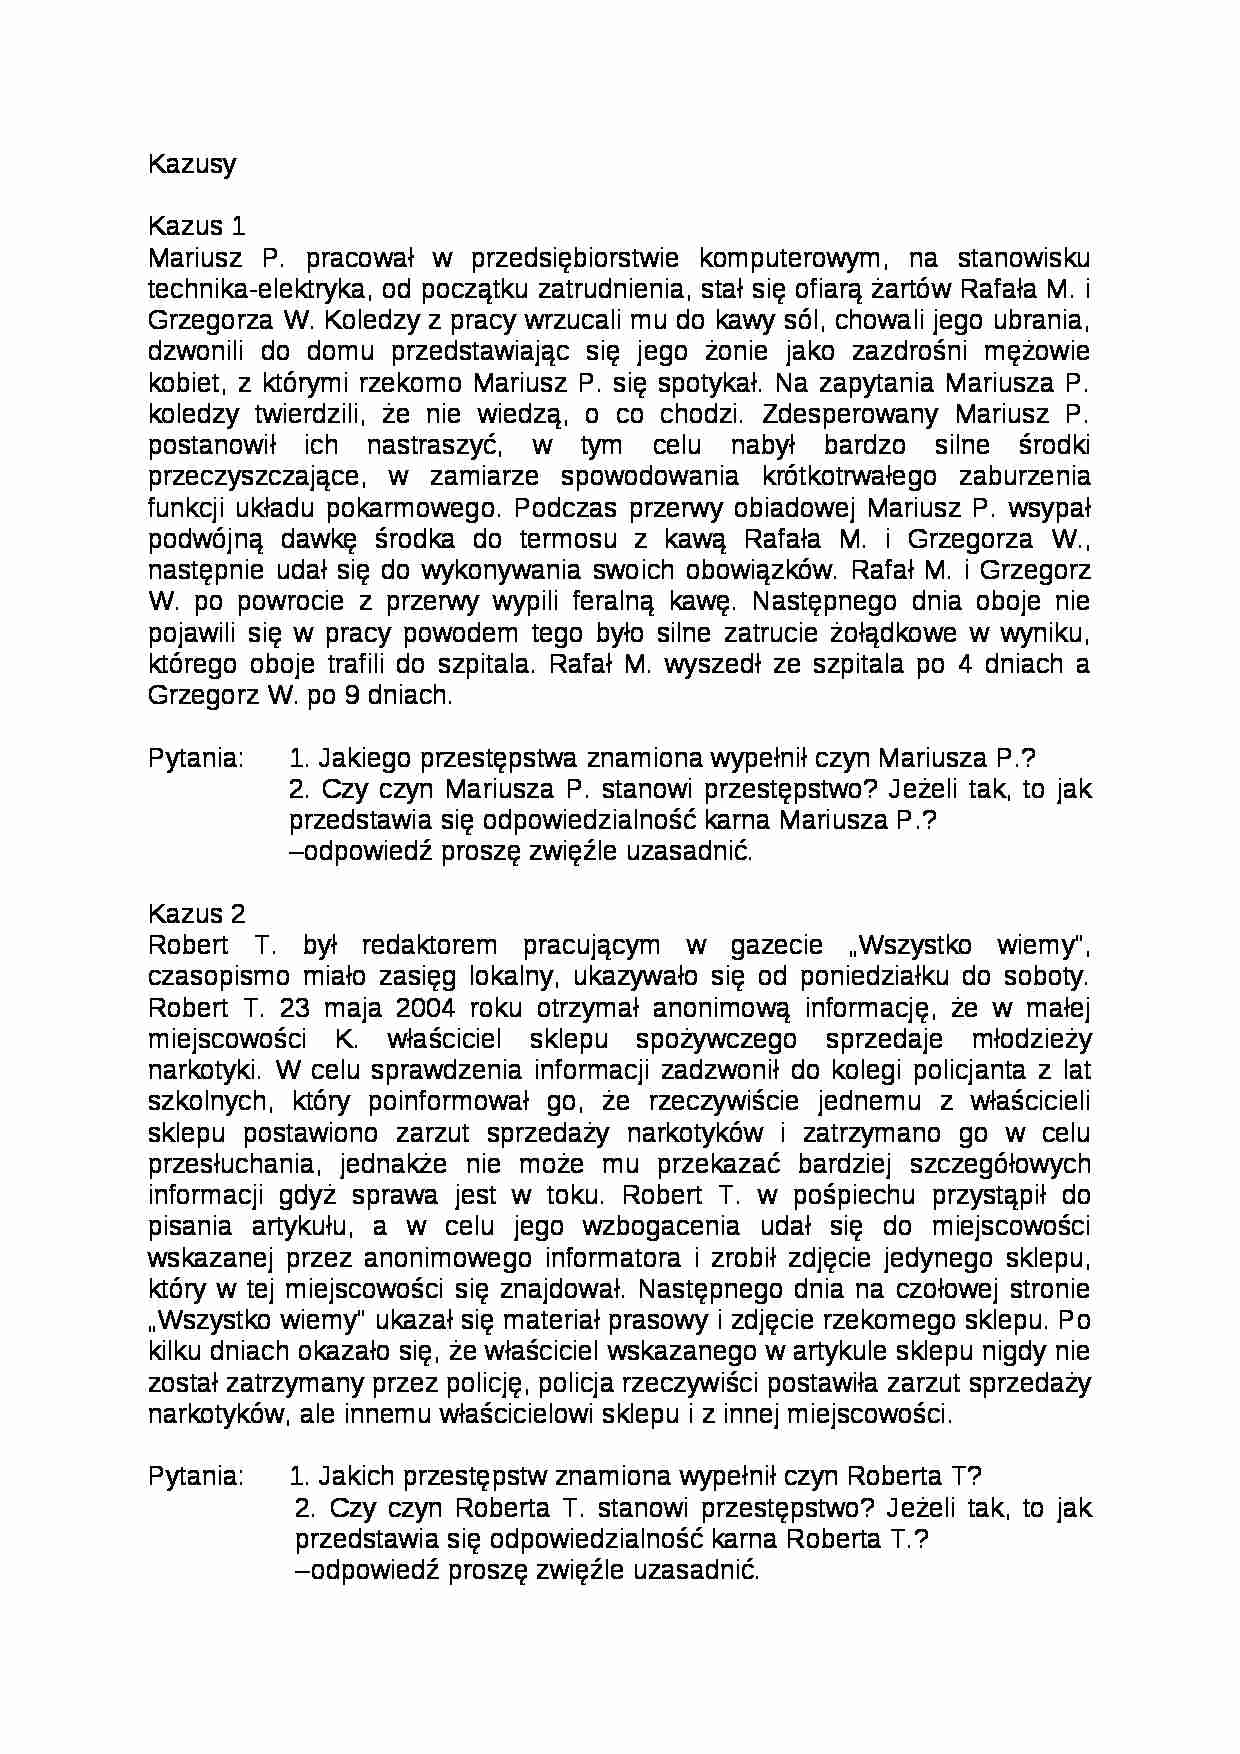 Kazusy - Prawo  - strona 1